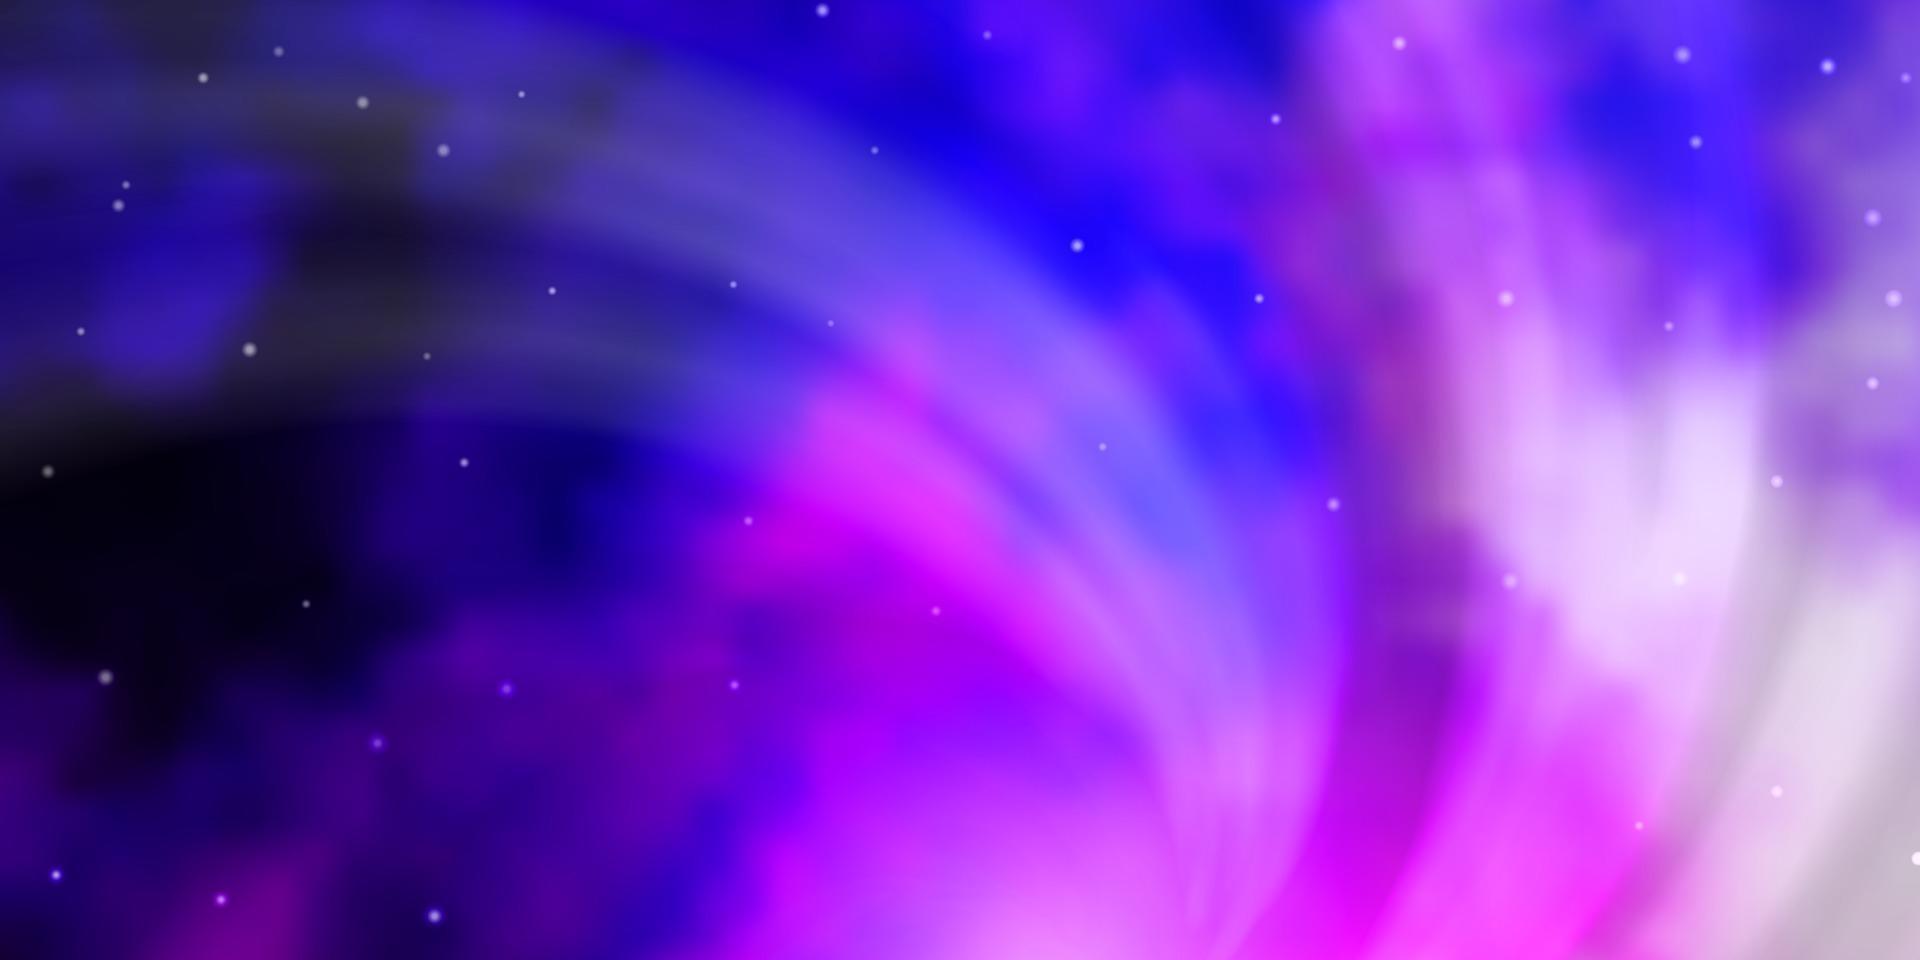 Fondo de vector violeta, rosa claro con estrellas pequeñas y grandes.